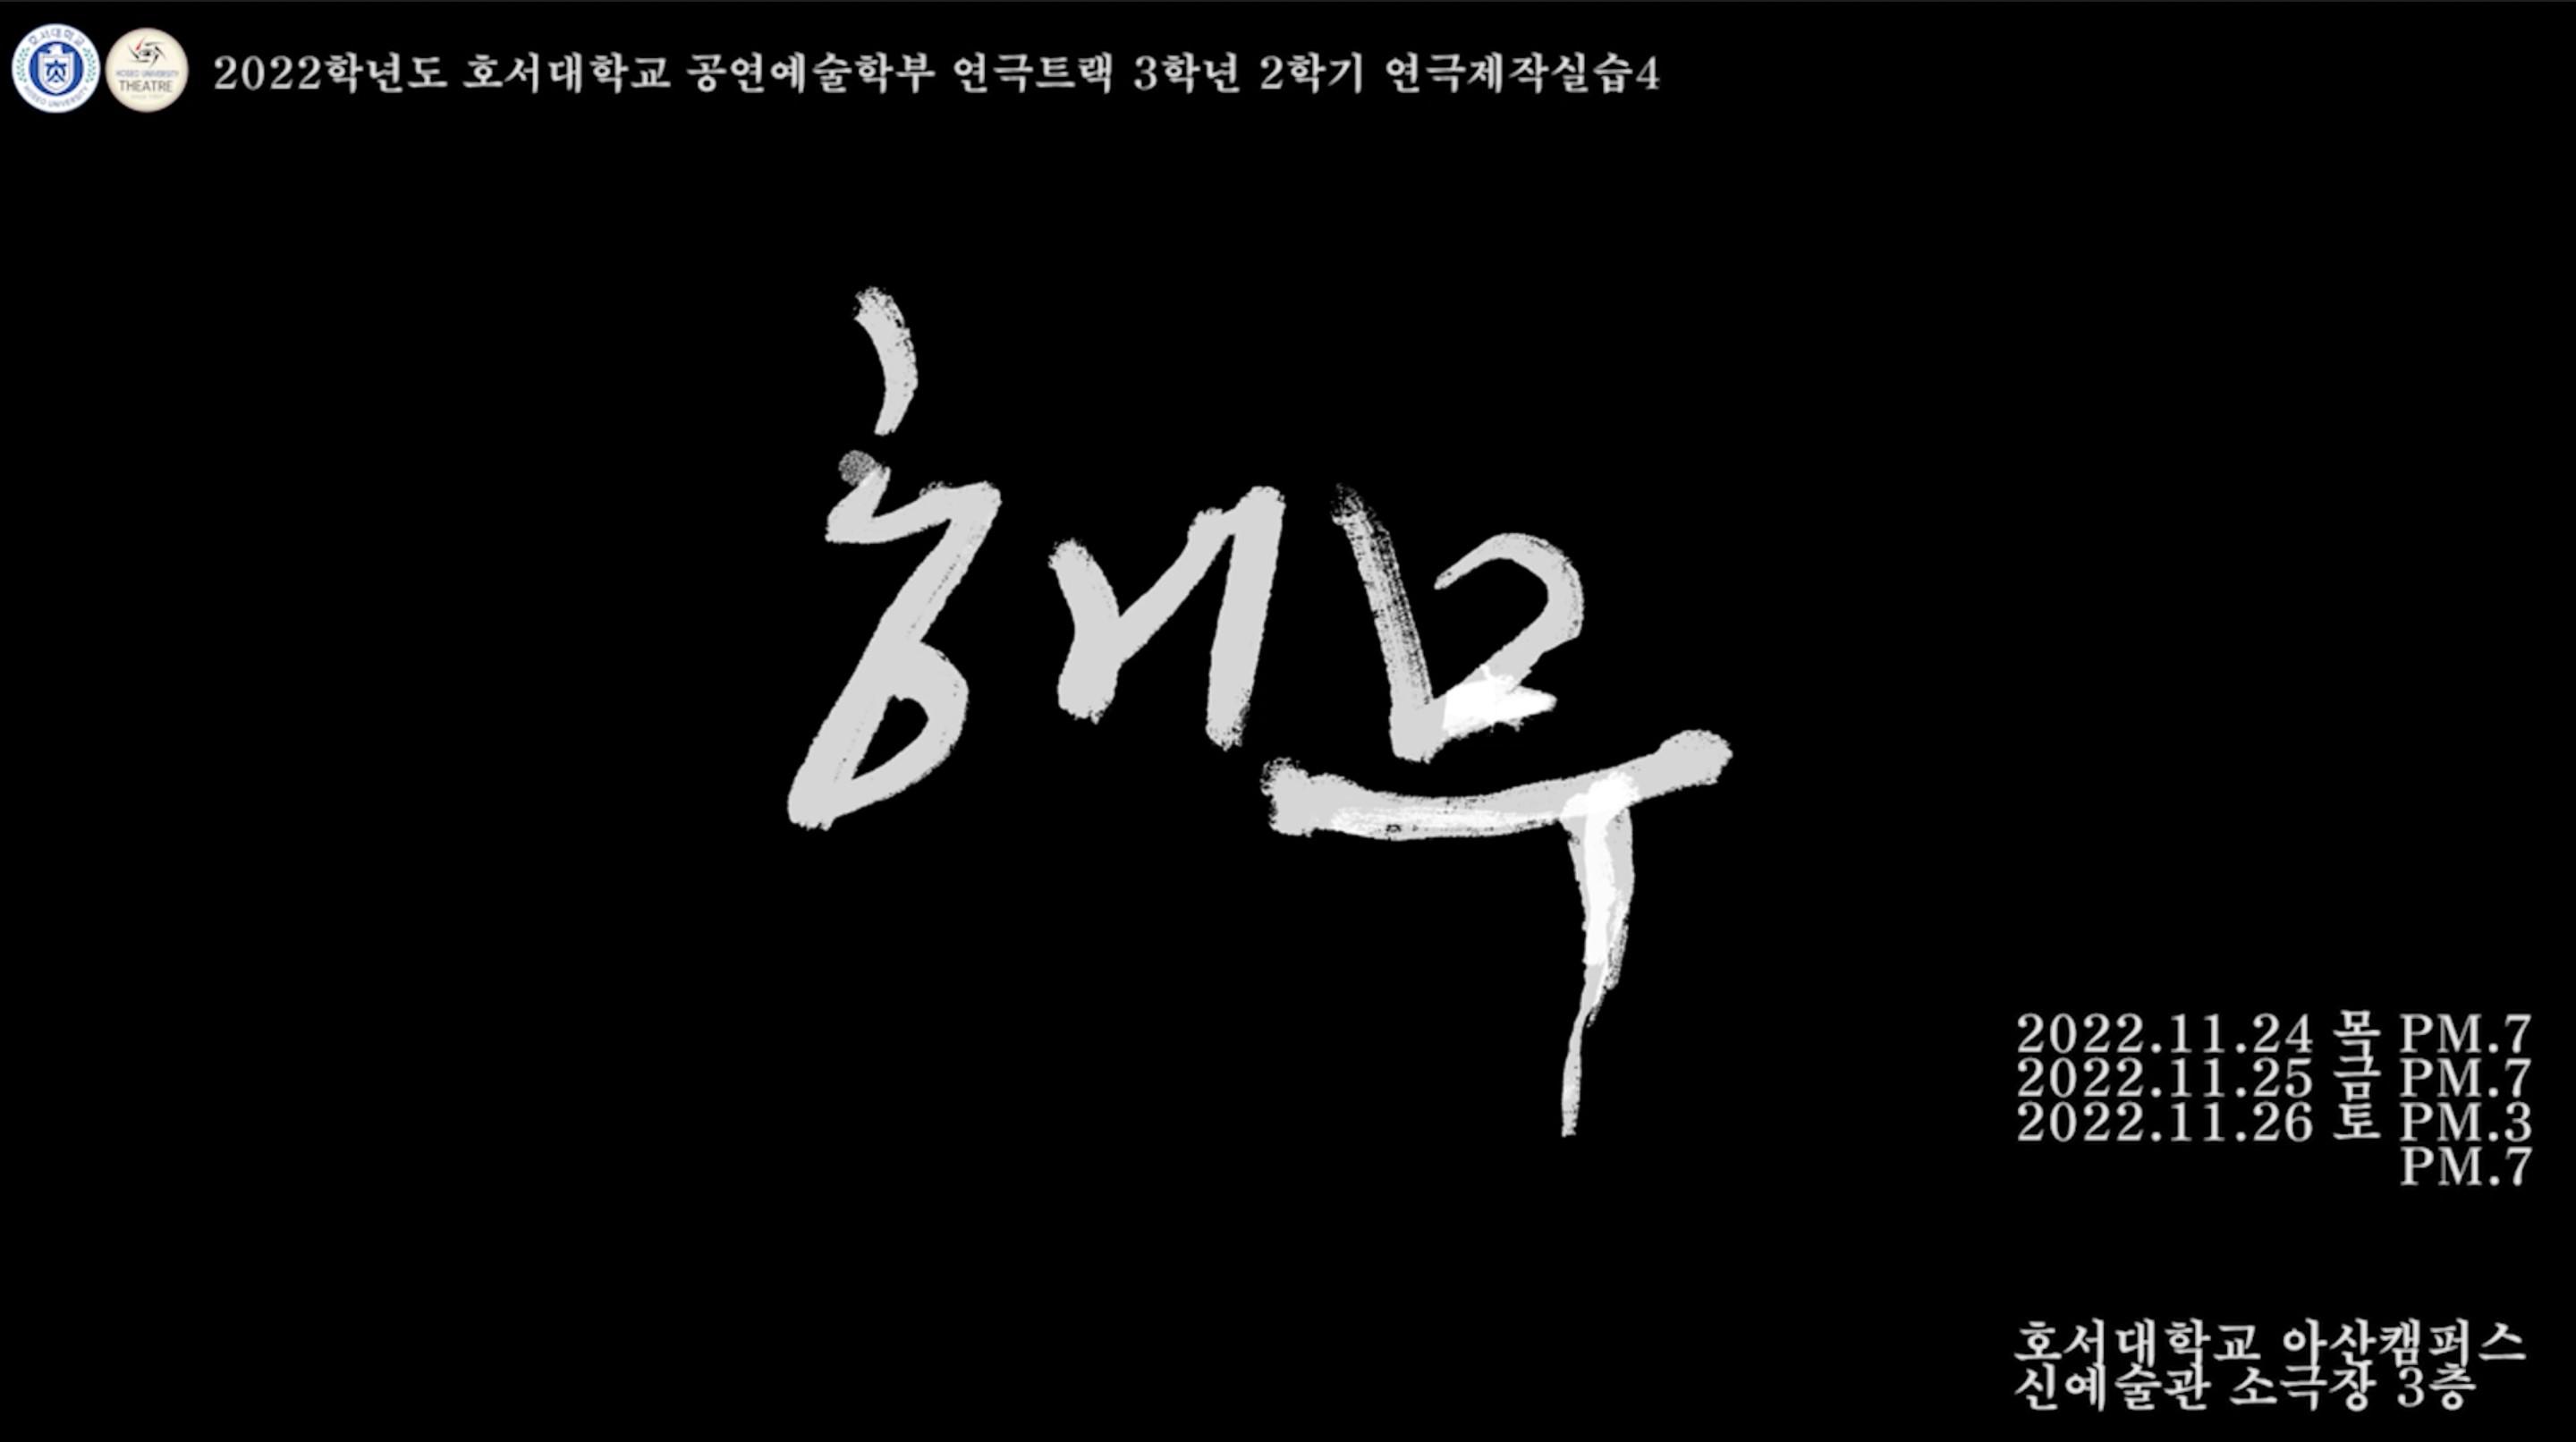 [호서대 연극트랙] 2022년 3학년 2학기 연극제작실습4 [해무] 공연 영상 공개